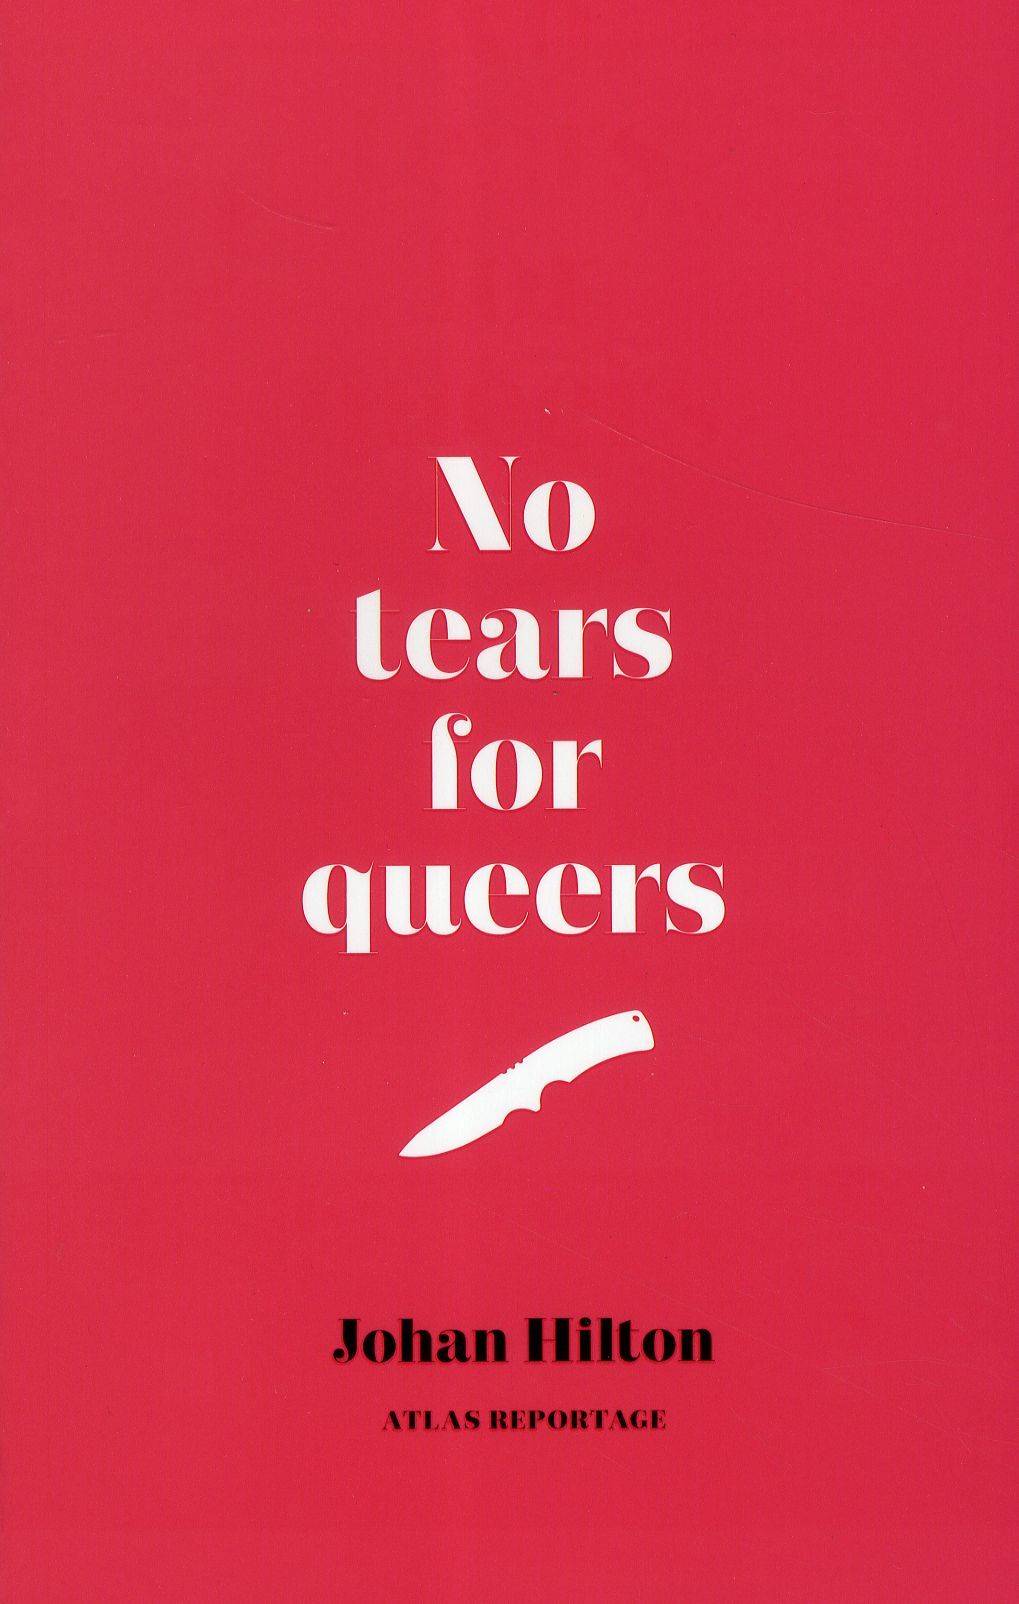 No tears for queers : Ett reportage om män, bögar och hatbrott